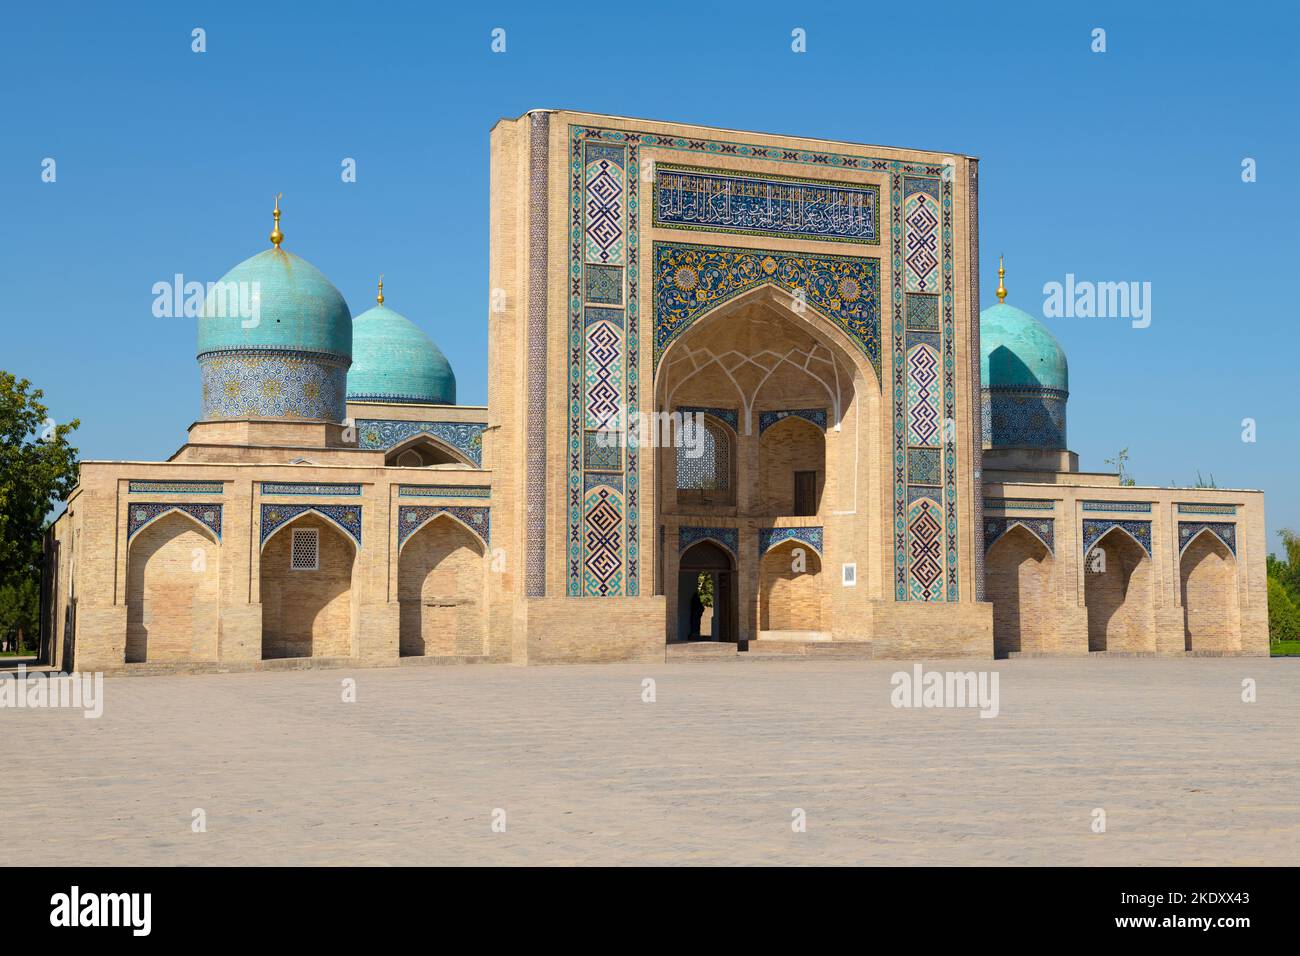 Ancienne madrasa de Barak Khan par un jour ensoleillé, Tachkent, Ouzbékistan Banque D'Images